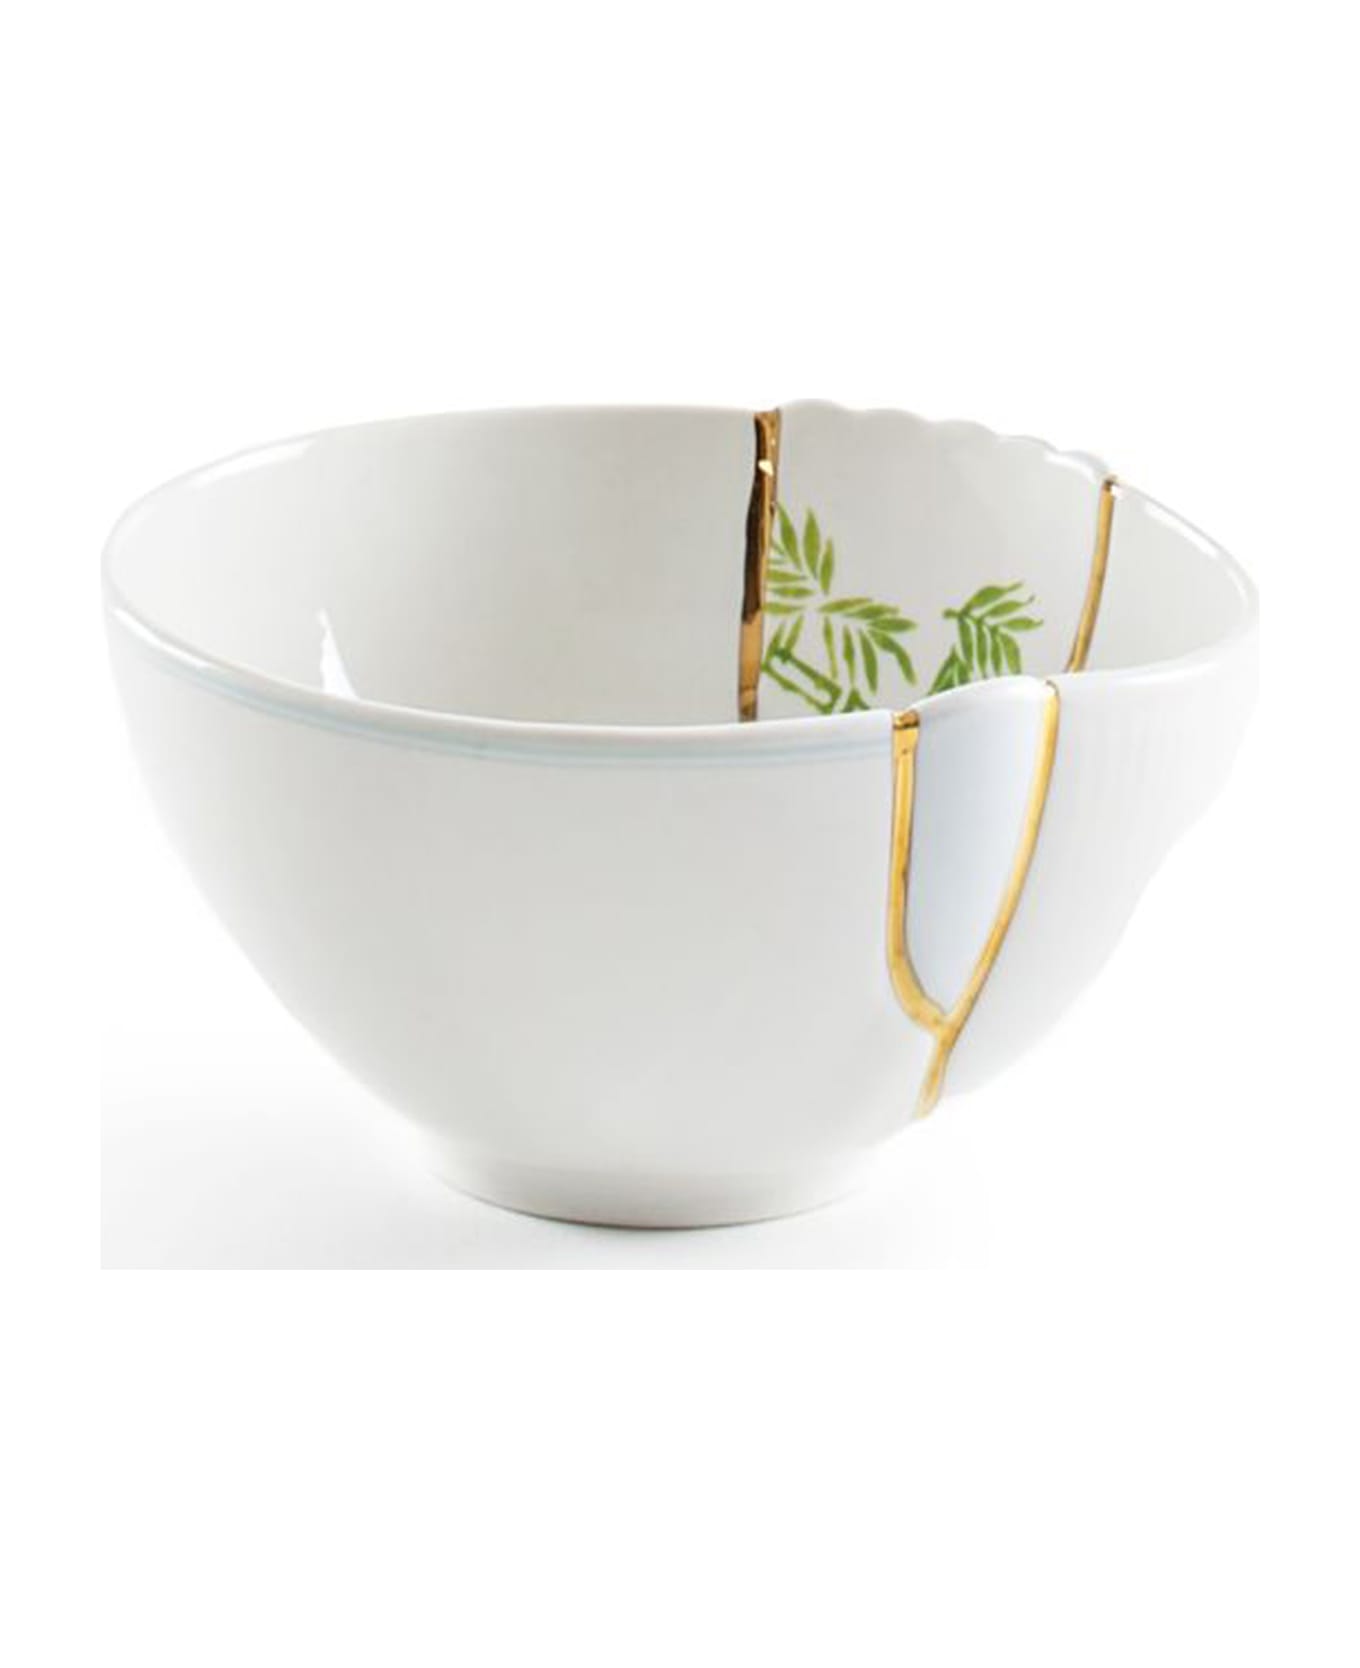 Seletti 'kintsugi' Small Bowl - Multicolor